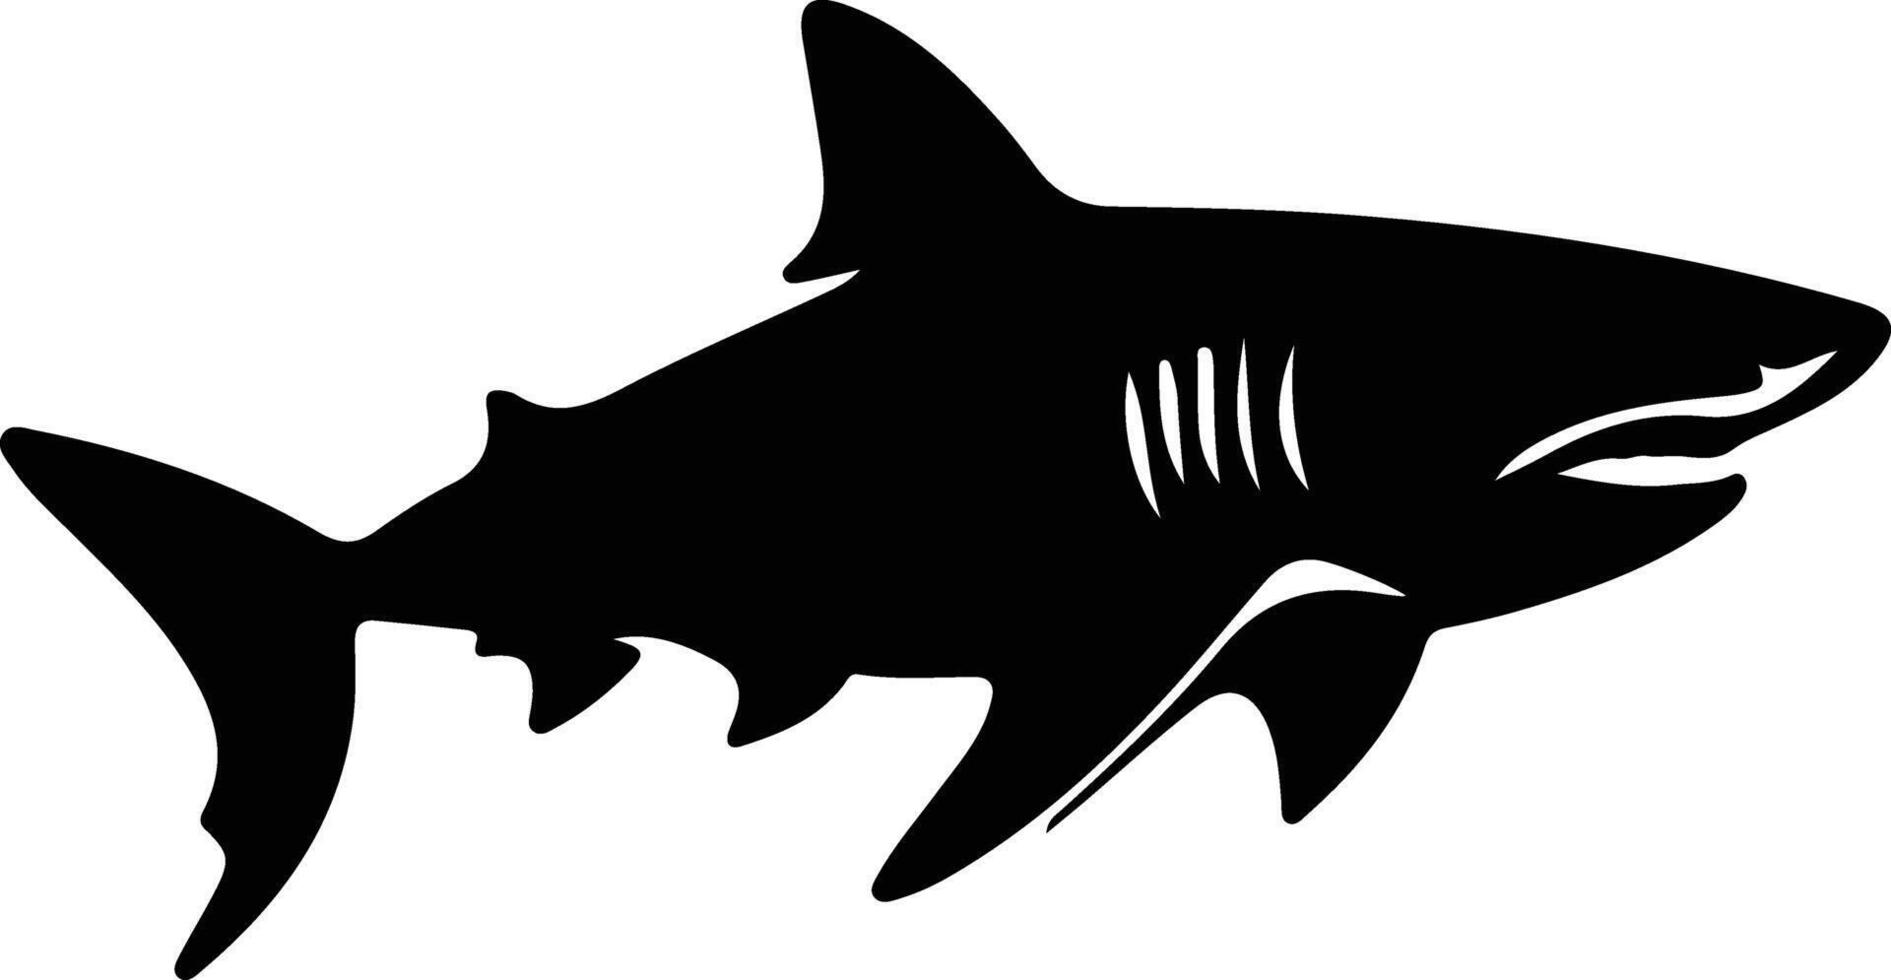 stier haai zwart silhouet vector